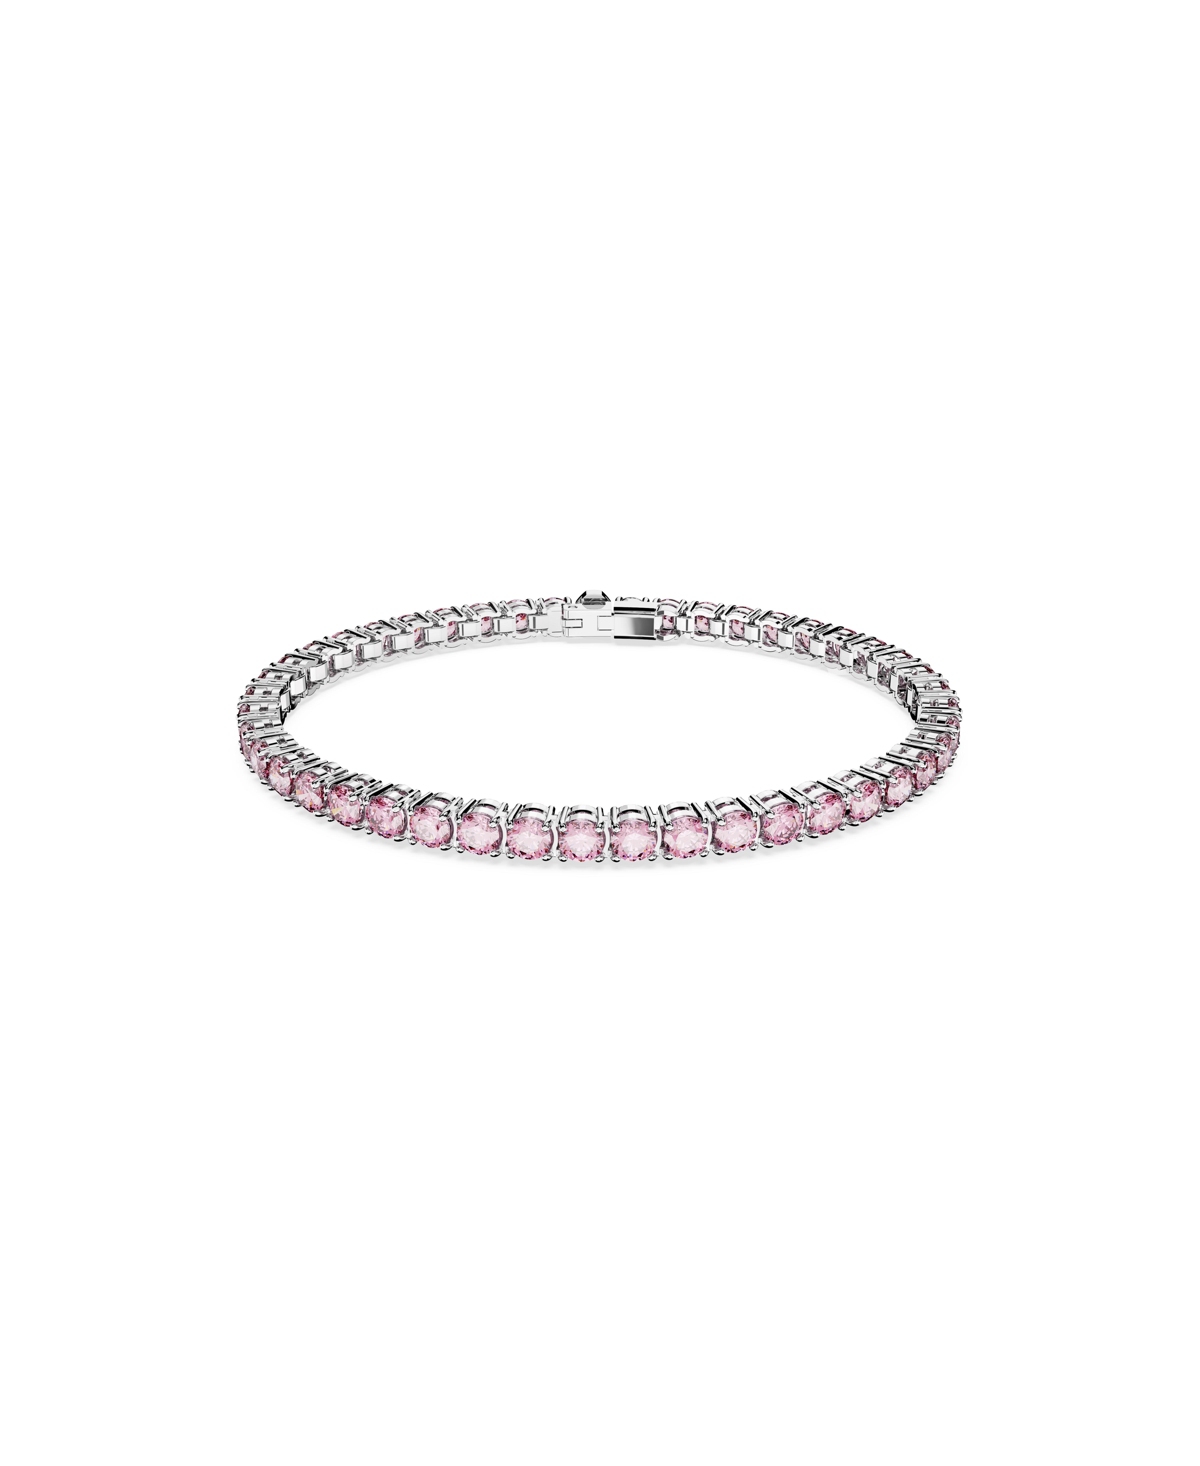 Swarovski Crystal Round Cut Matrix Tennis Bracelet In Pink